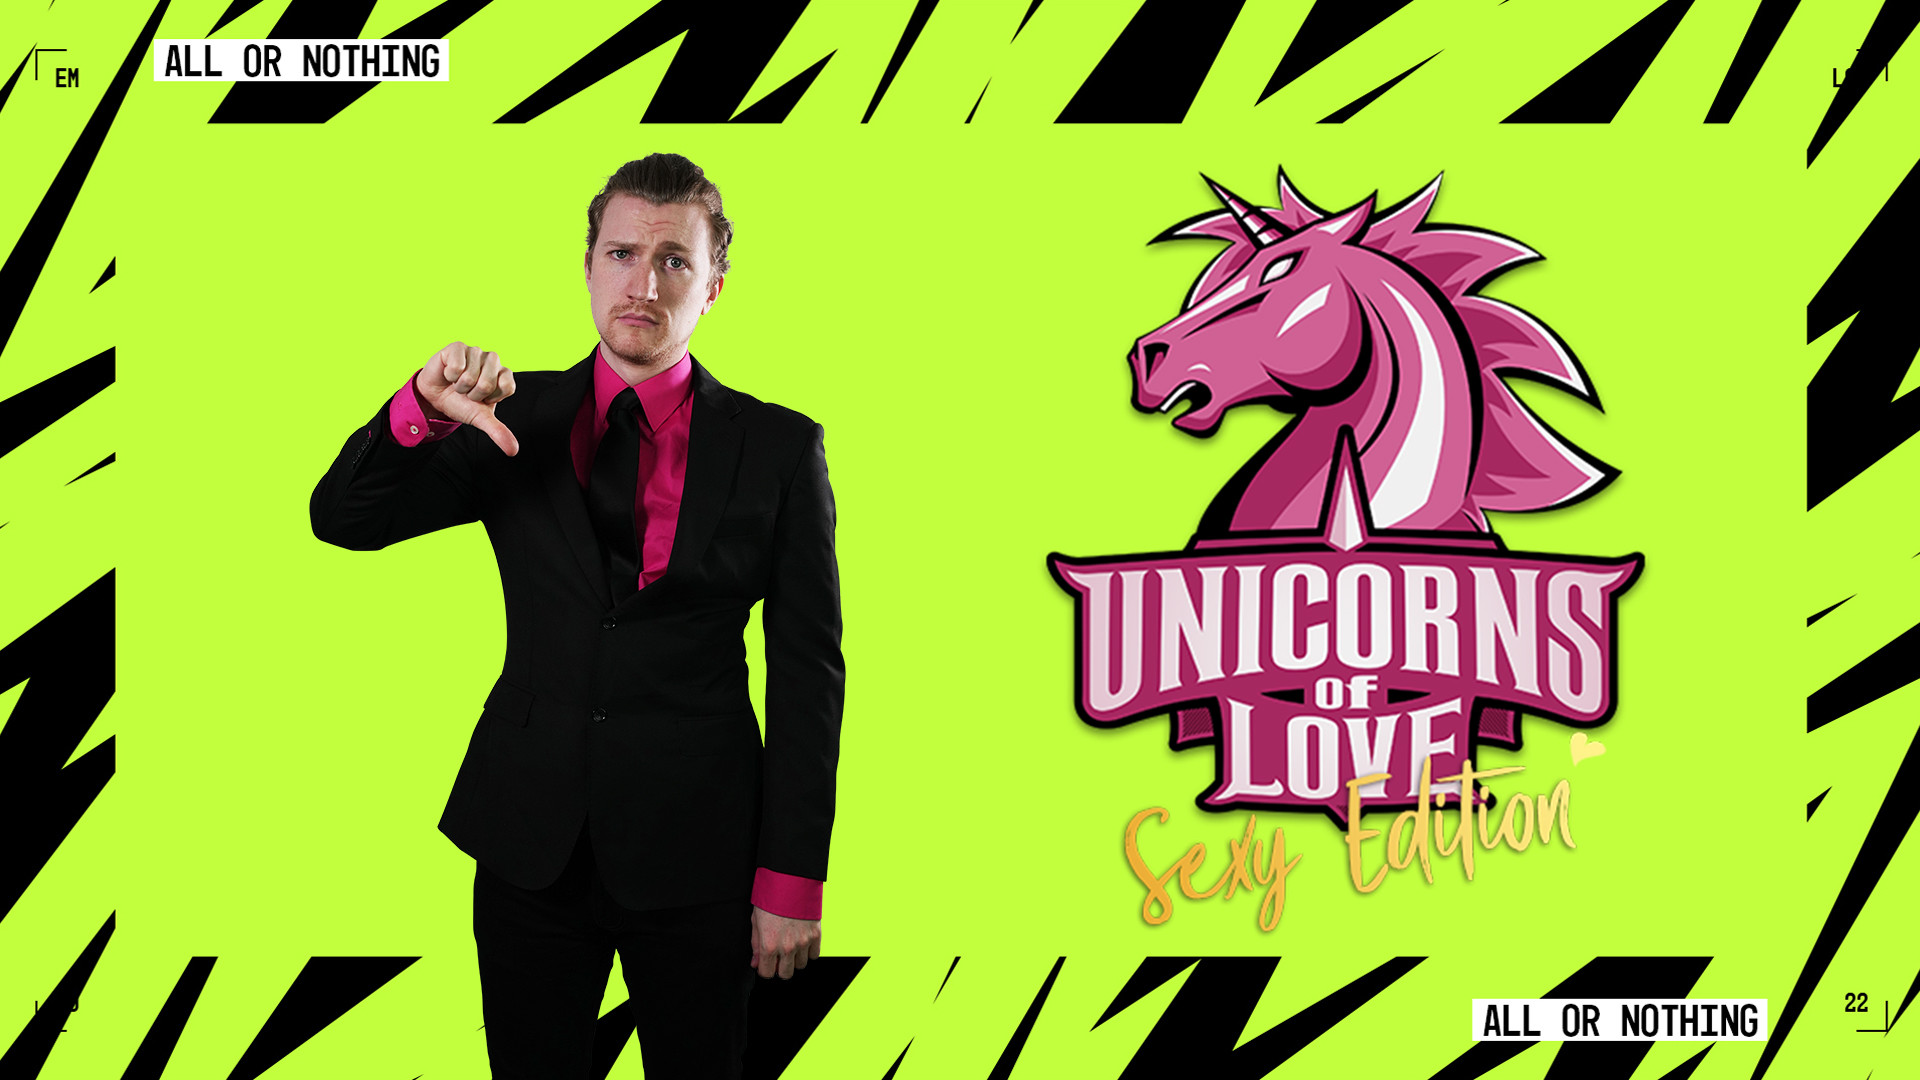 Das Bild zeigt den Coach und Gründer der Unicorns of Love Sexy Edition Fabian Sheepy Mallant.